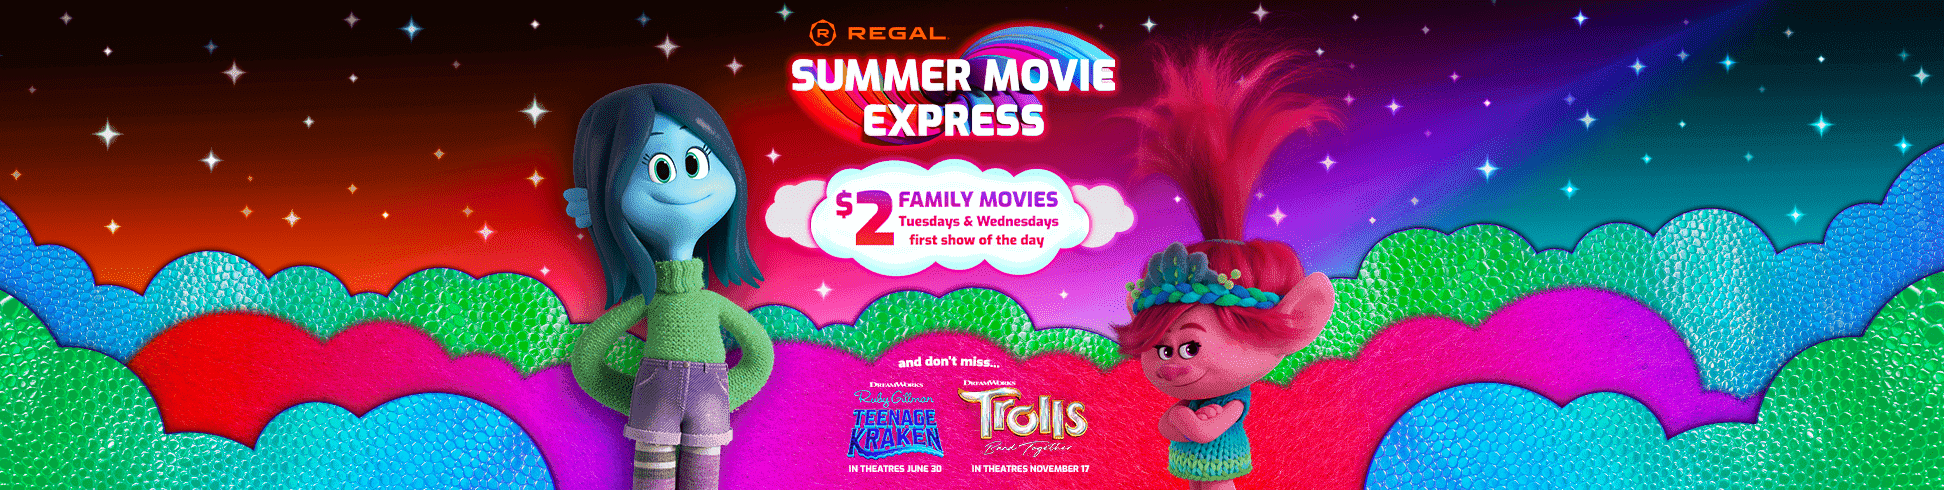 Regal Cinemas Summer Movie Express movie schedule